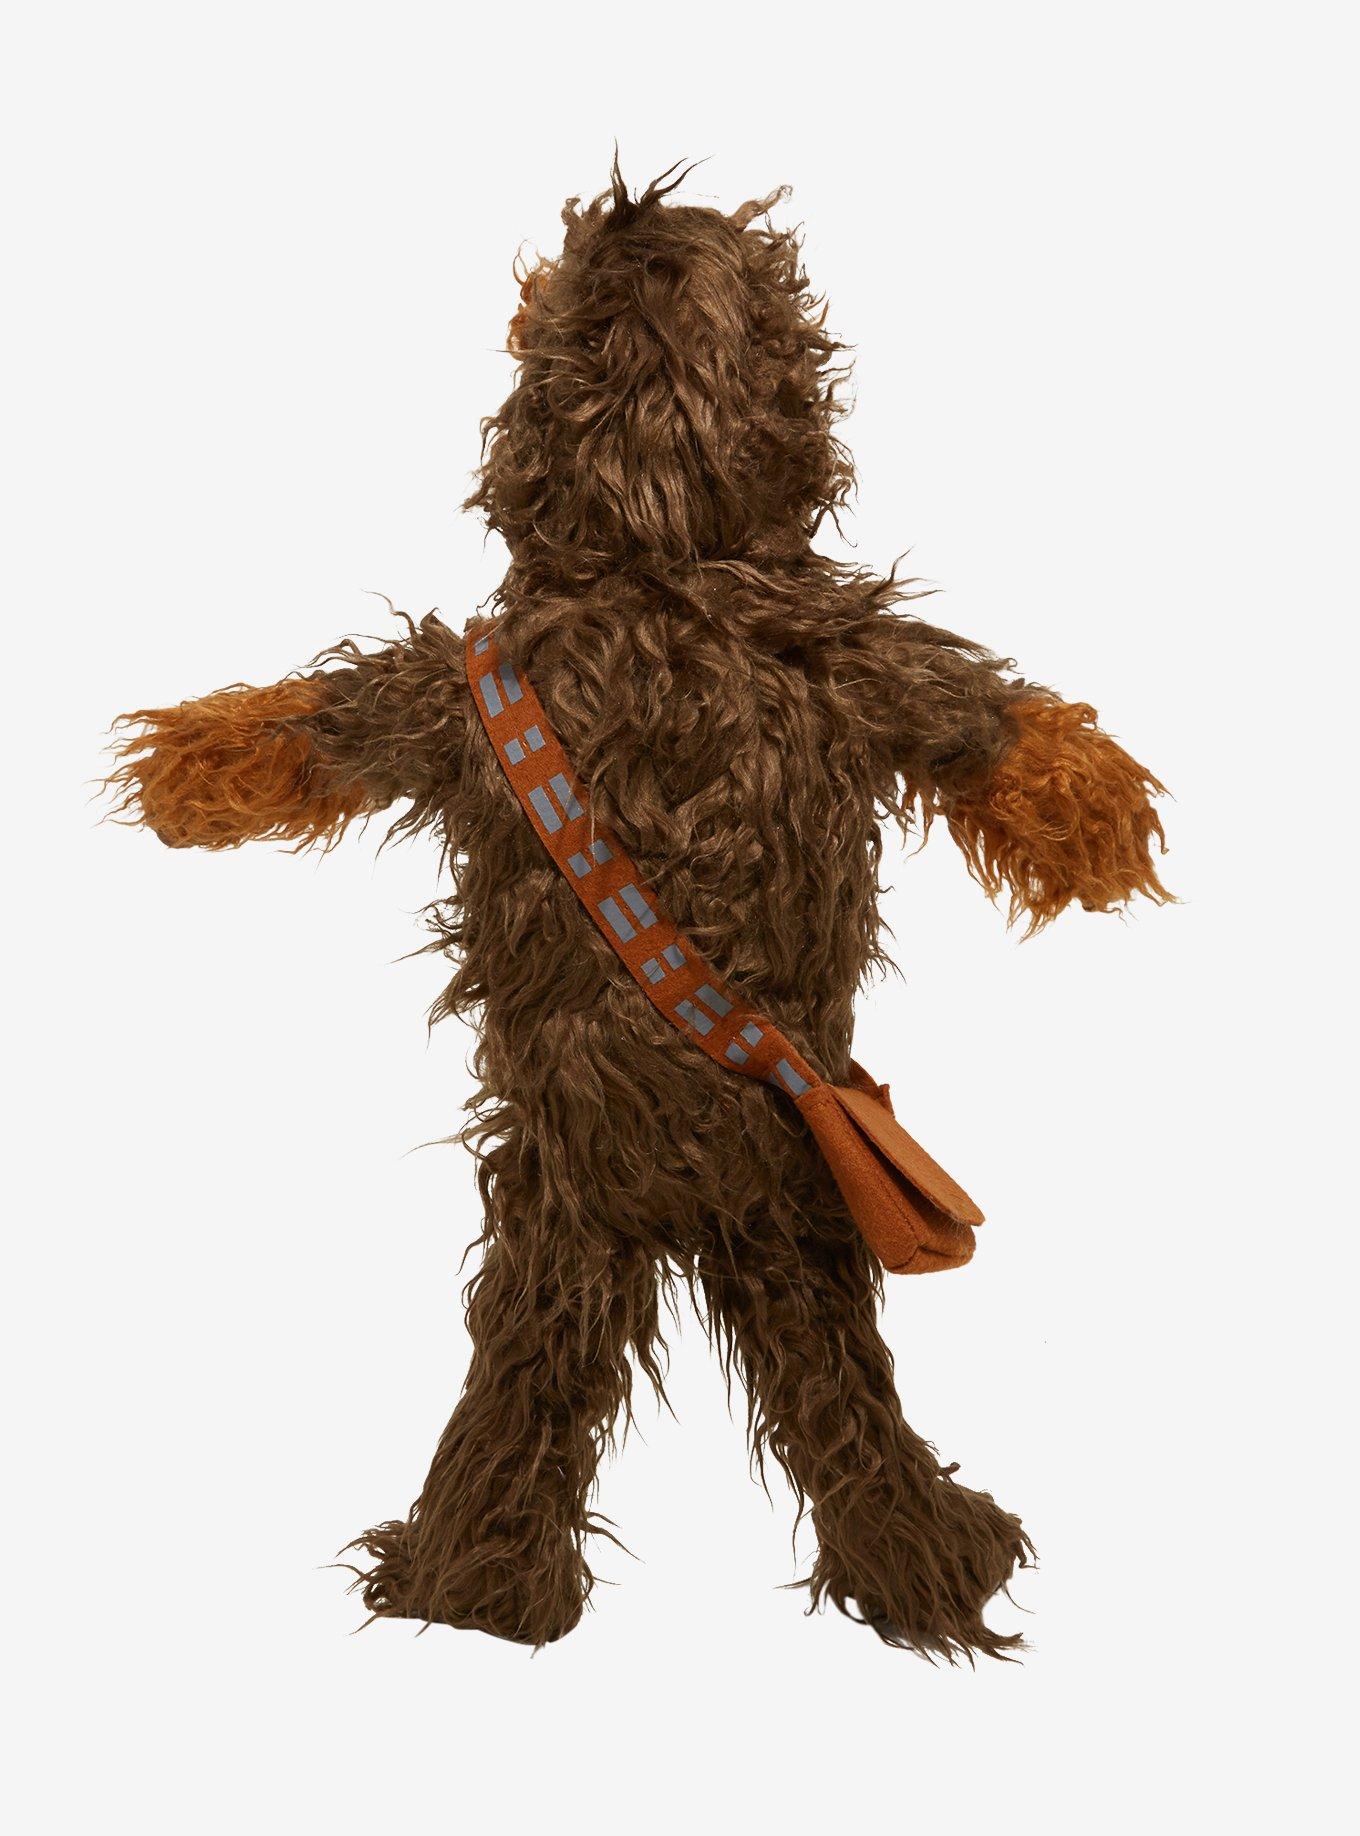 Star Wars Chewbacca Plush, , alternate